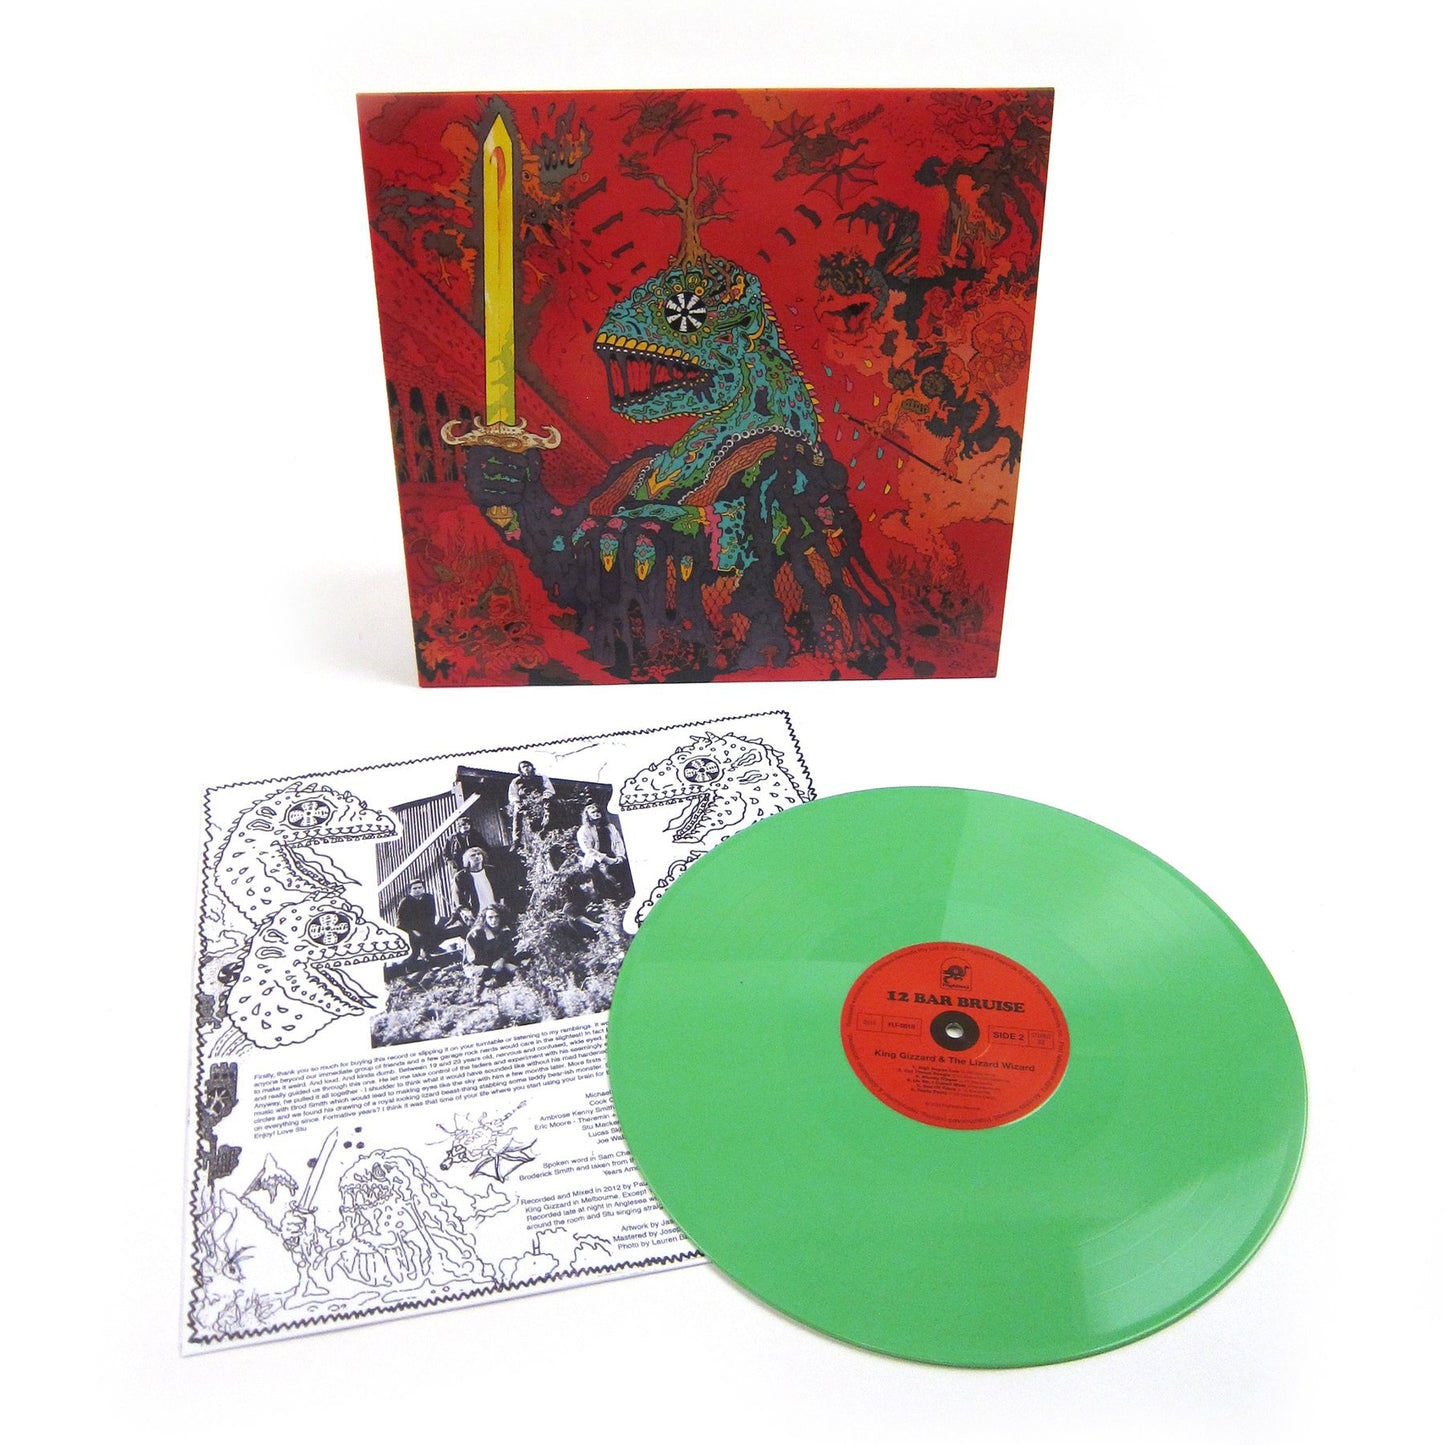 NEW - King Gizzard & The Lizard Wizard, 12 Bar Bruise Double Mint Green Vinyl